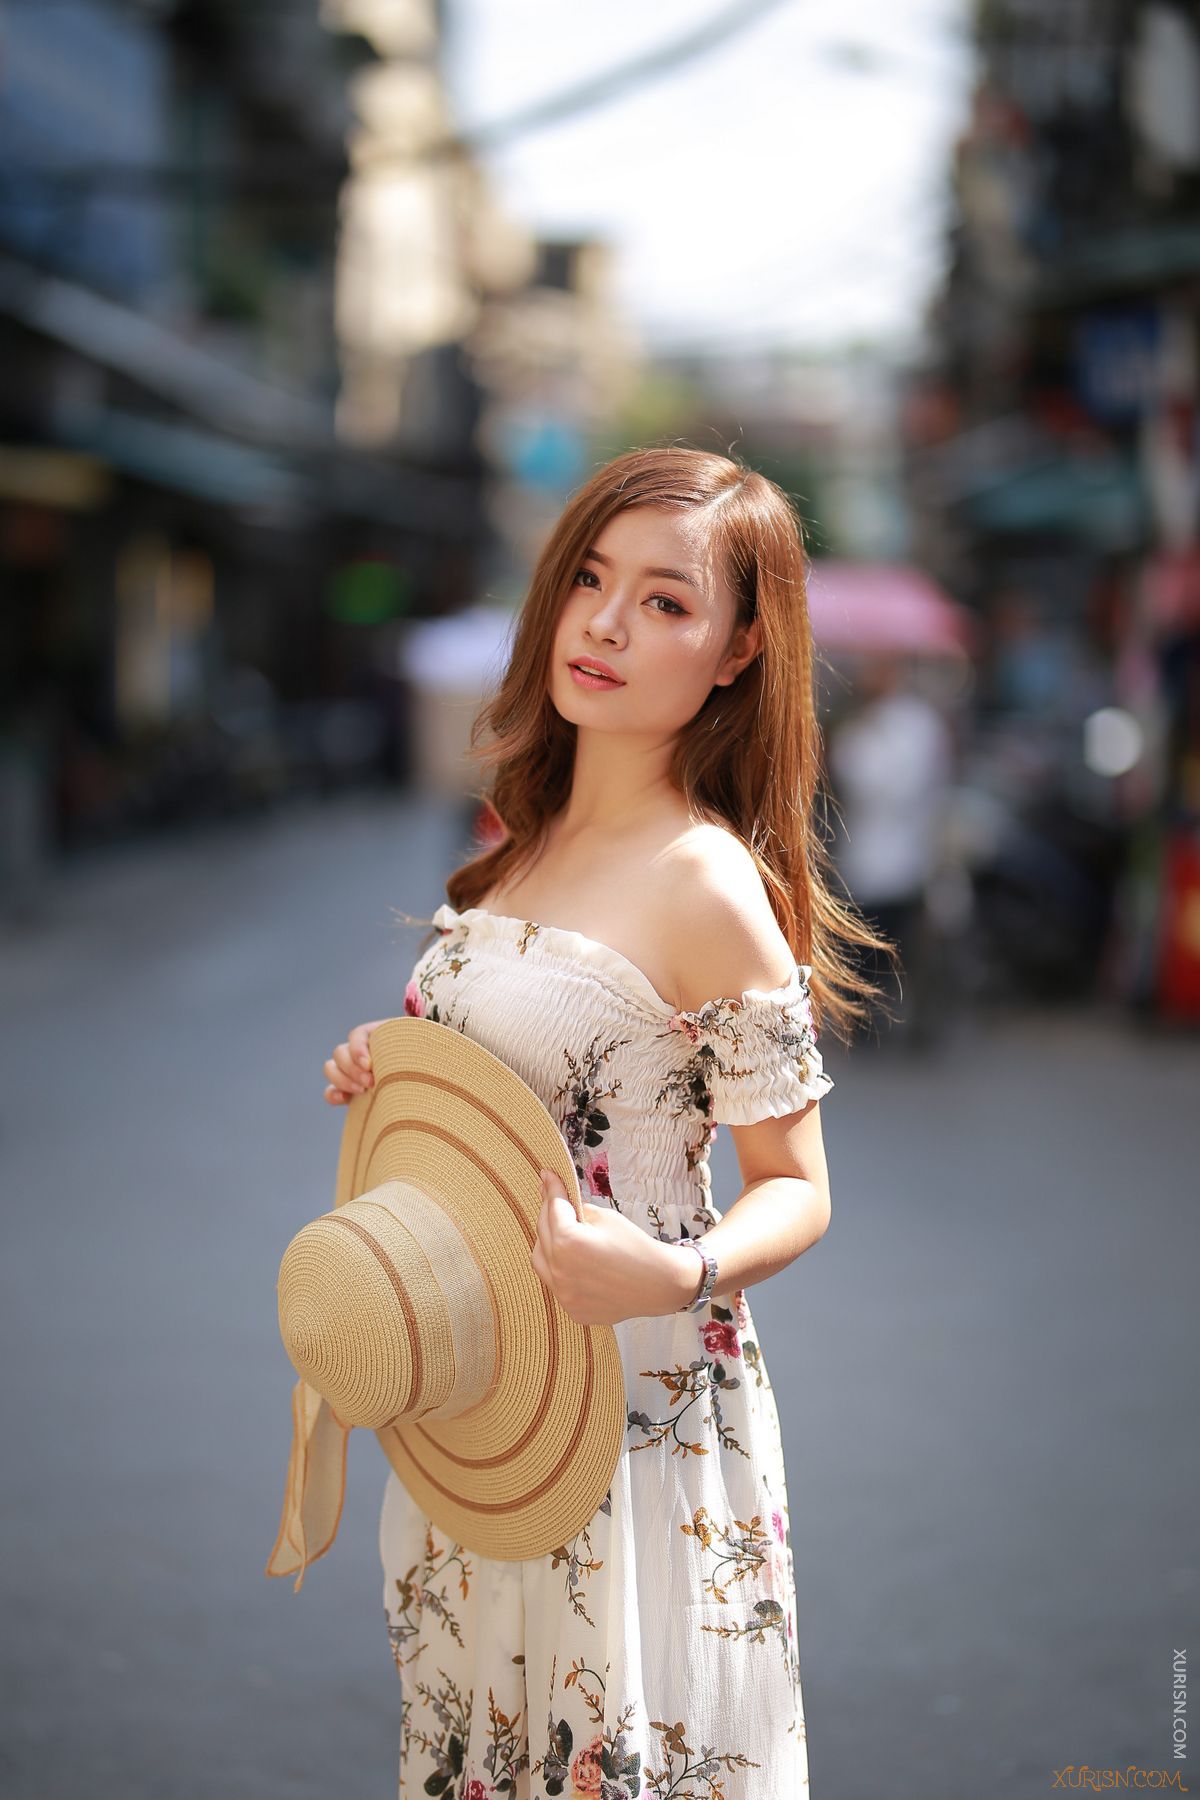 美图欣赏-8张越南美女的街拍写真RAW原图欣赏Canon EOS 6D(9)